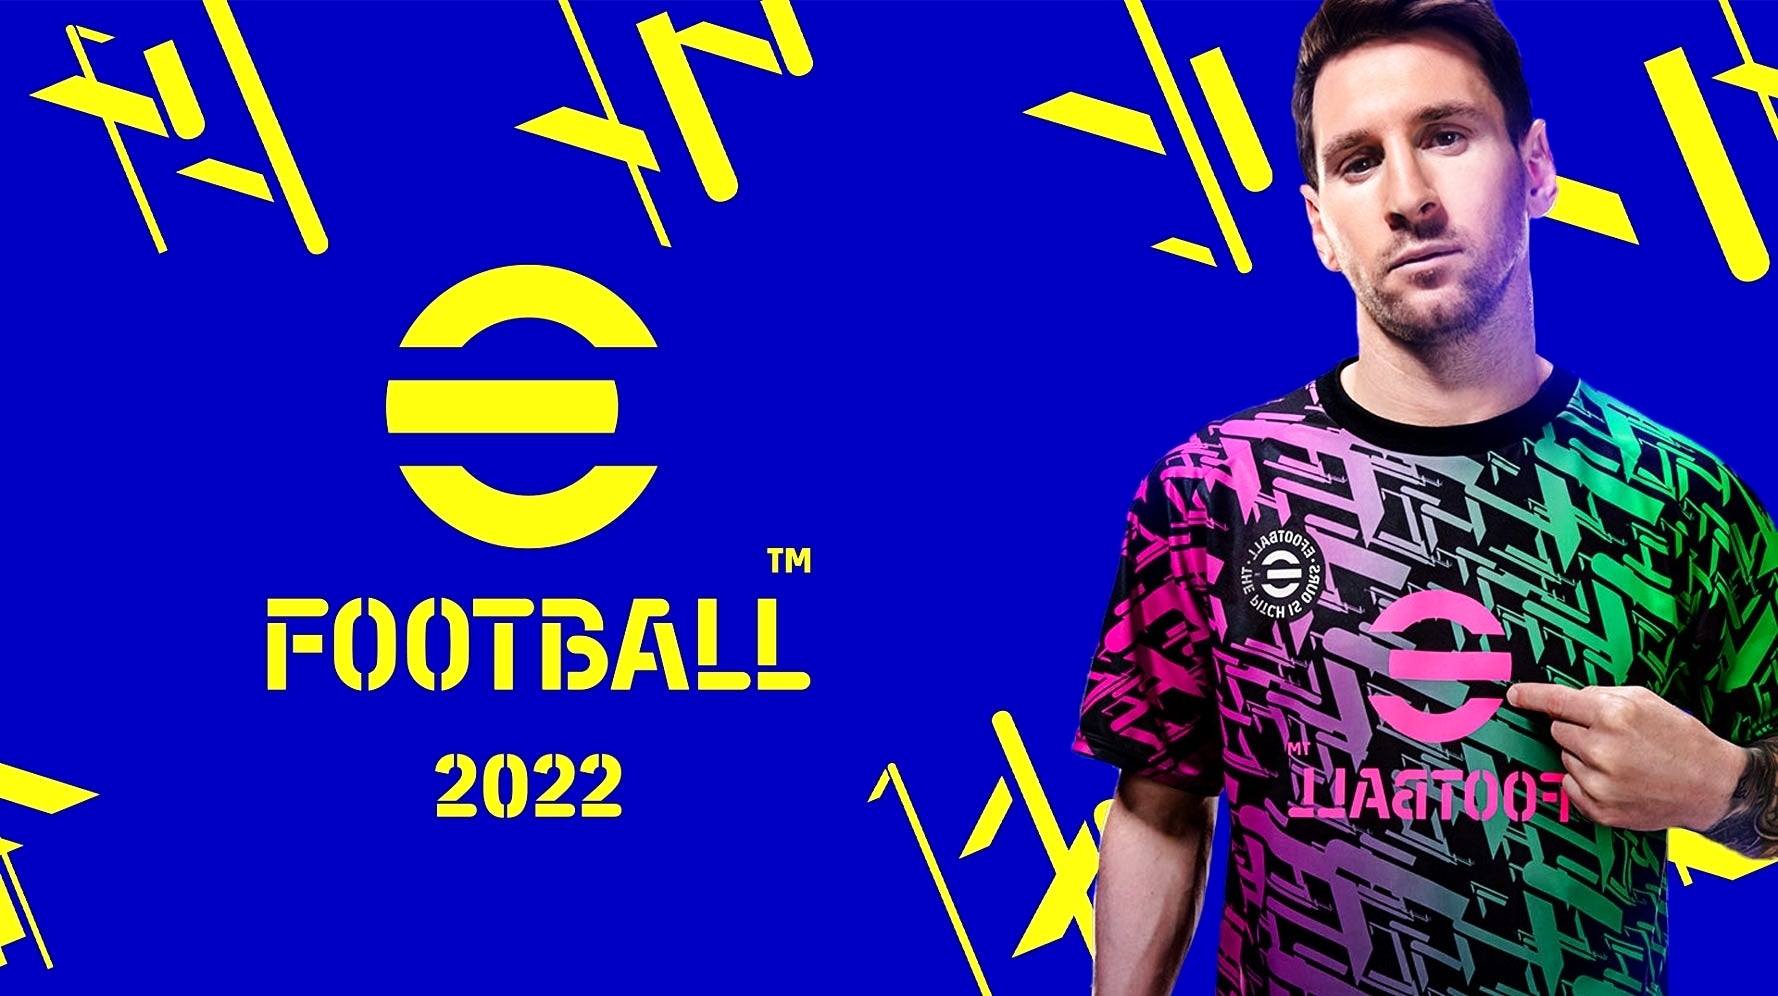 Bilder zu eFootball 2022 hat schon jetzt einen 40-Euro-DLC, der Pay-to-win-Sorgen befeuert